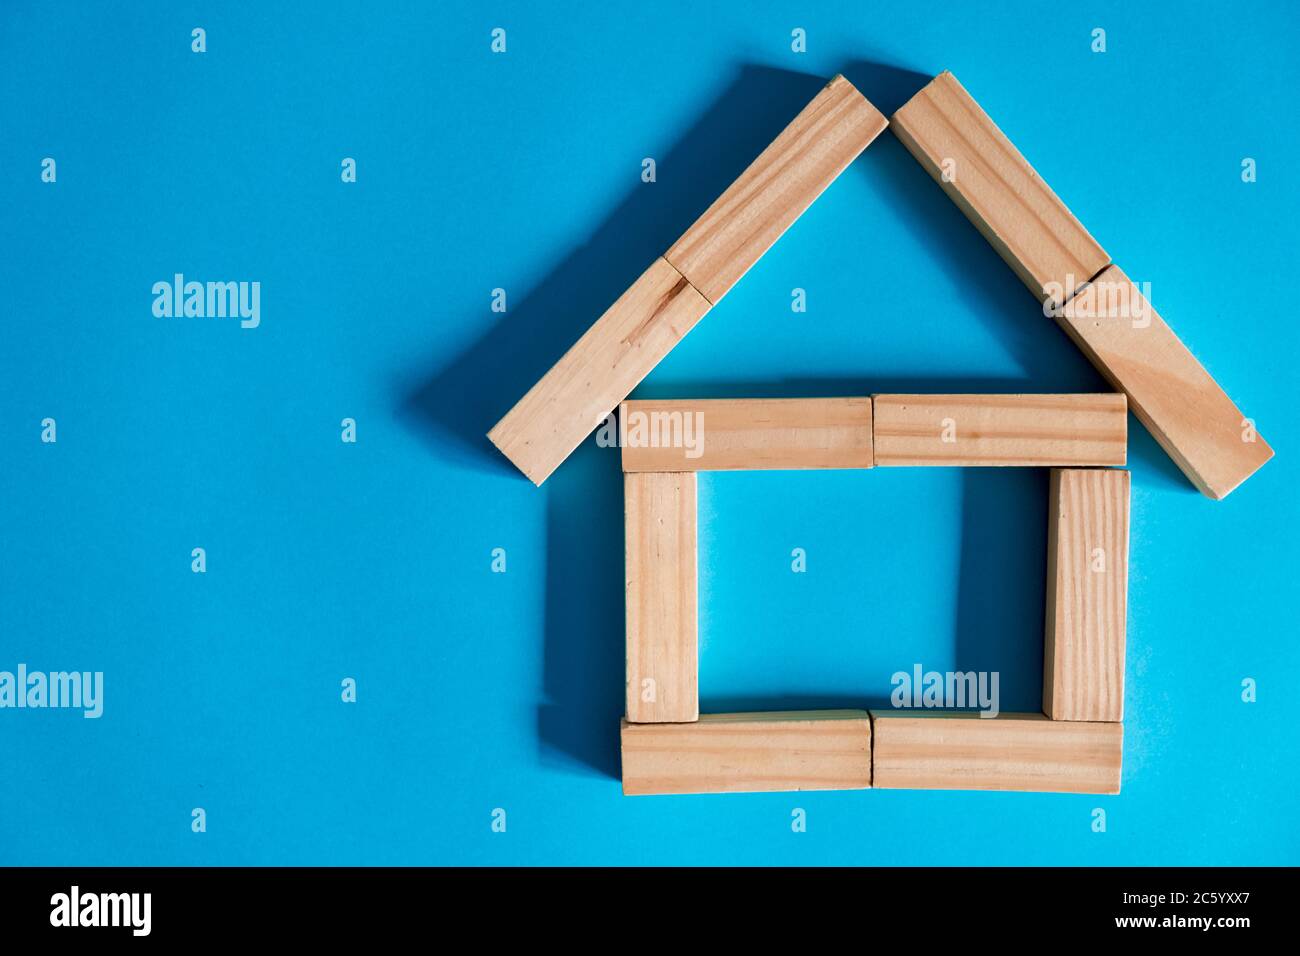 Casa di legno su sfondo blu. Prestare al pubblico. Il concetto di alloggio a prezzi accessibili e ipoteche per acquistare una casa. Foto Stock